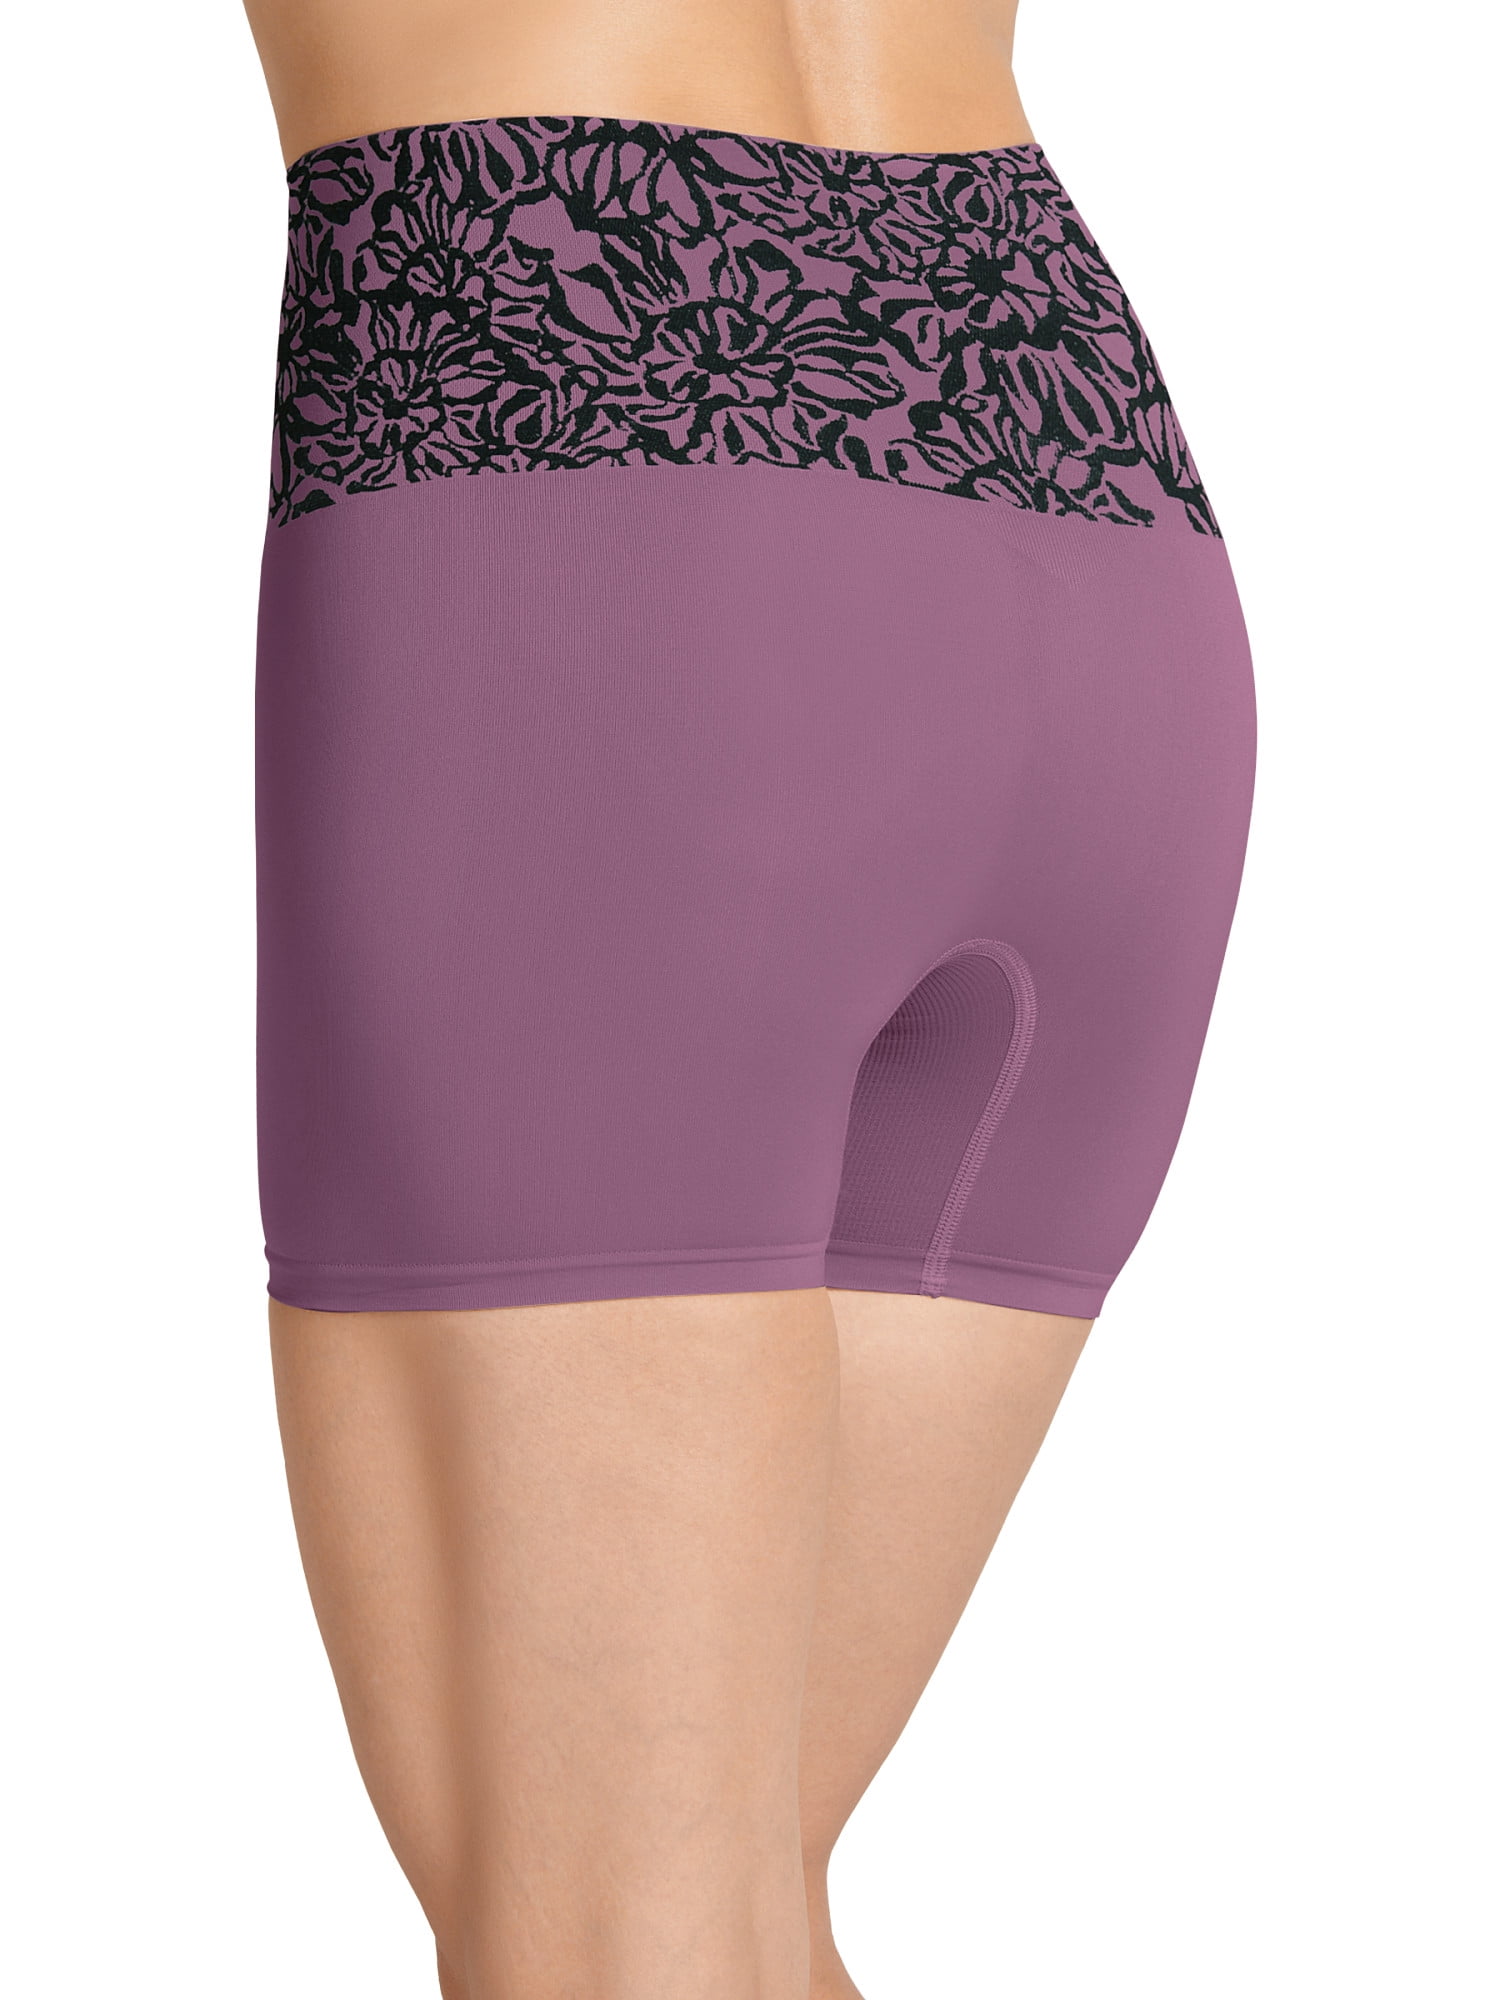 JKY by Jockey Womens Pooch Tamer Slimming Shaper Slip Shorts